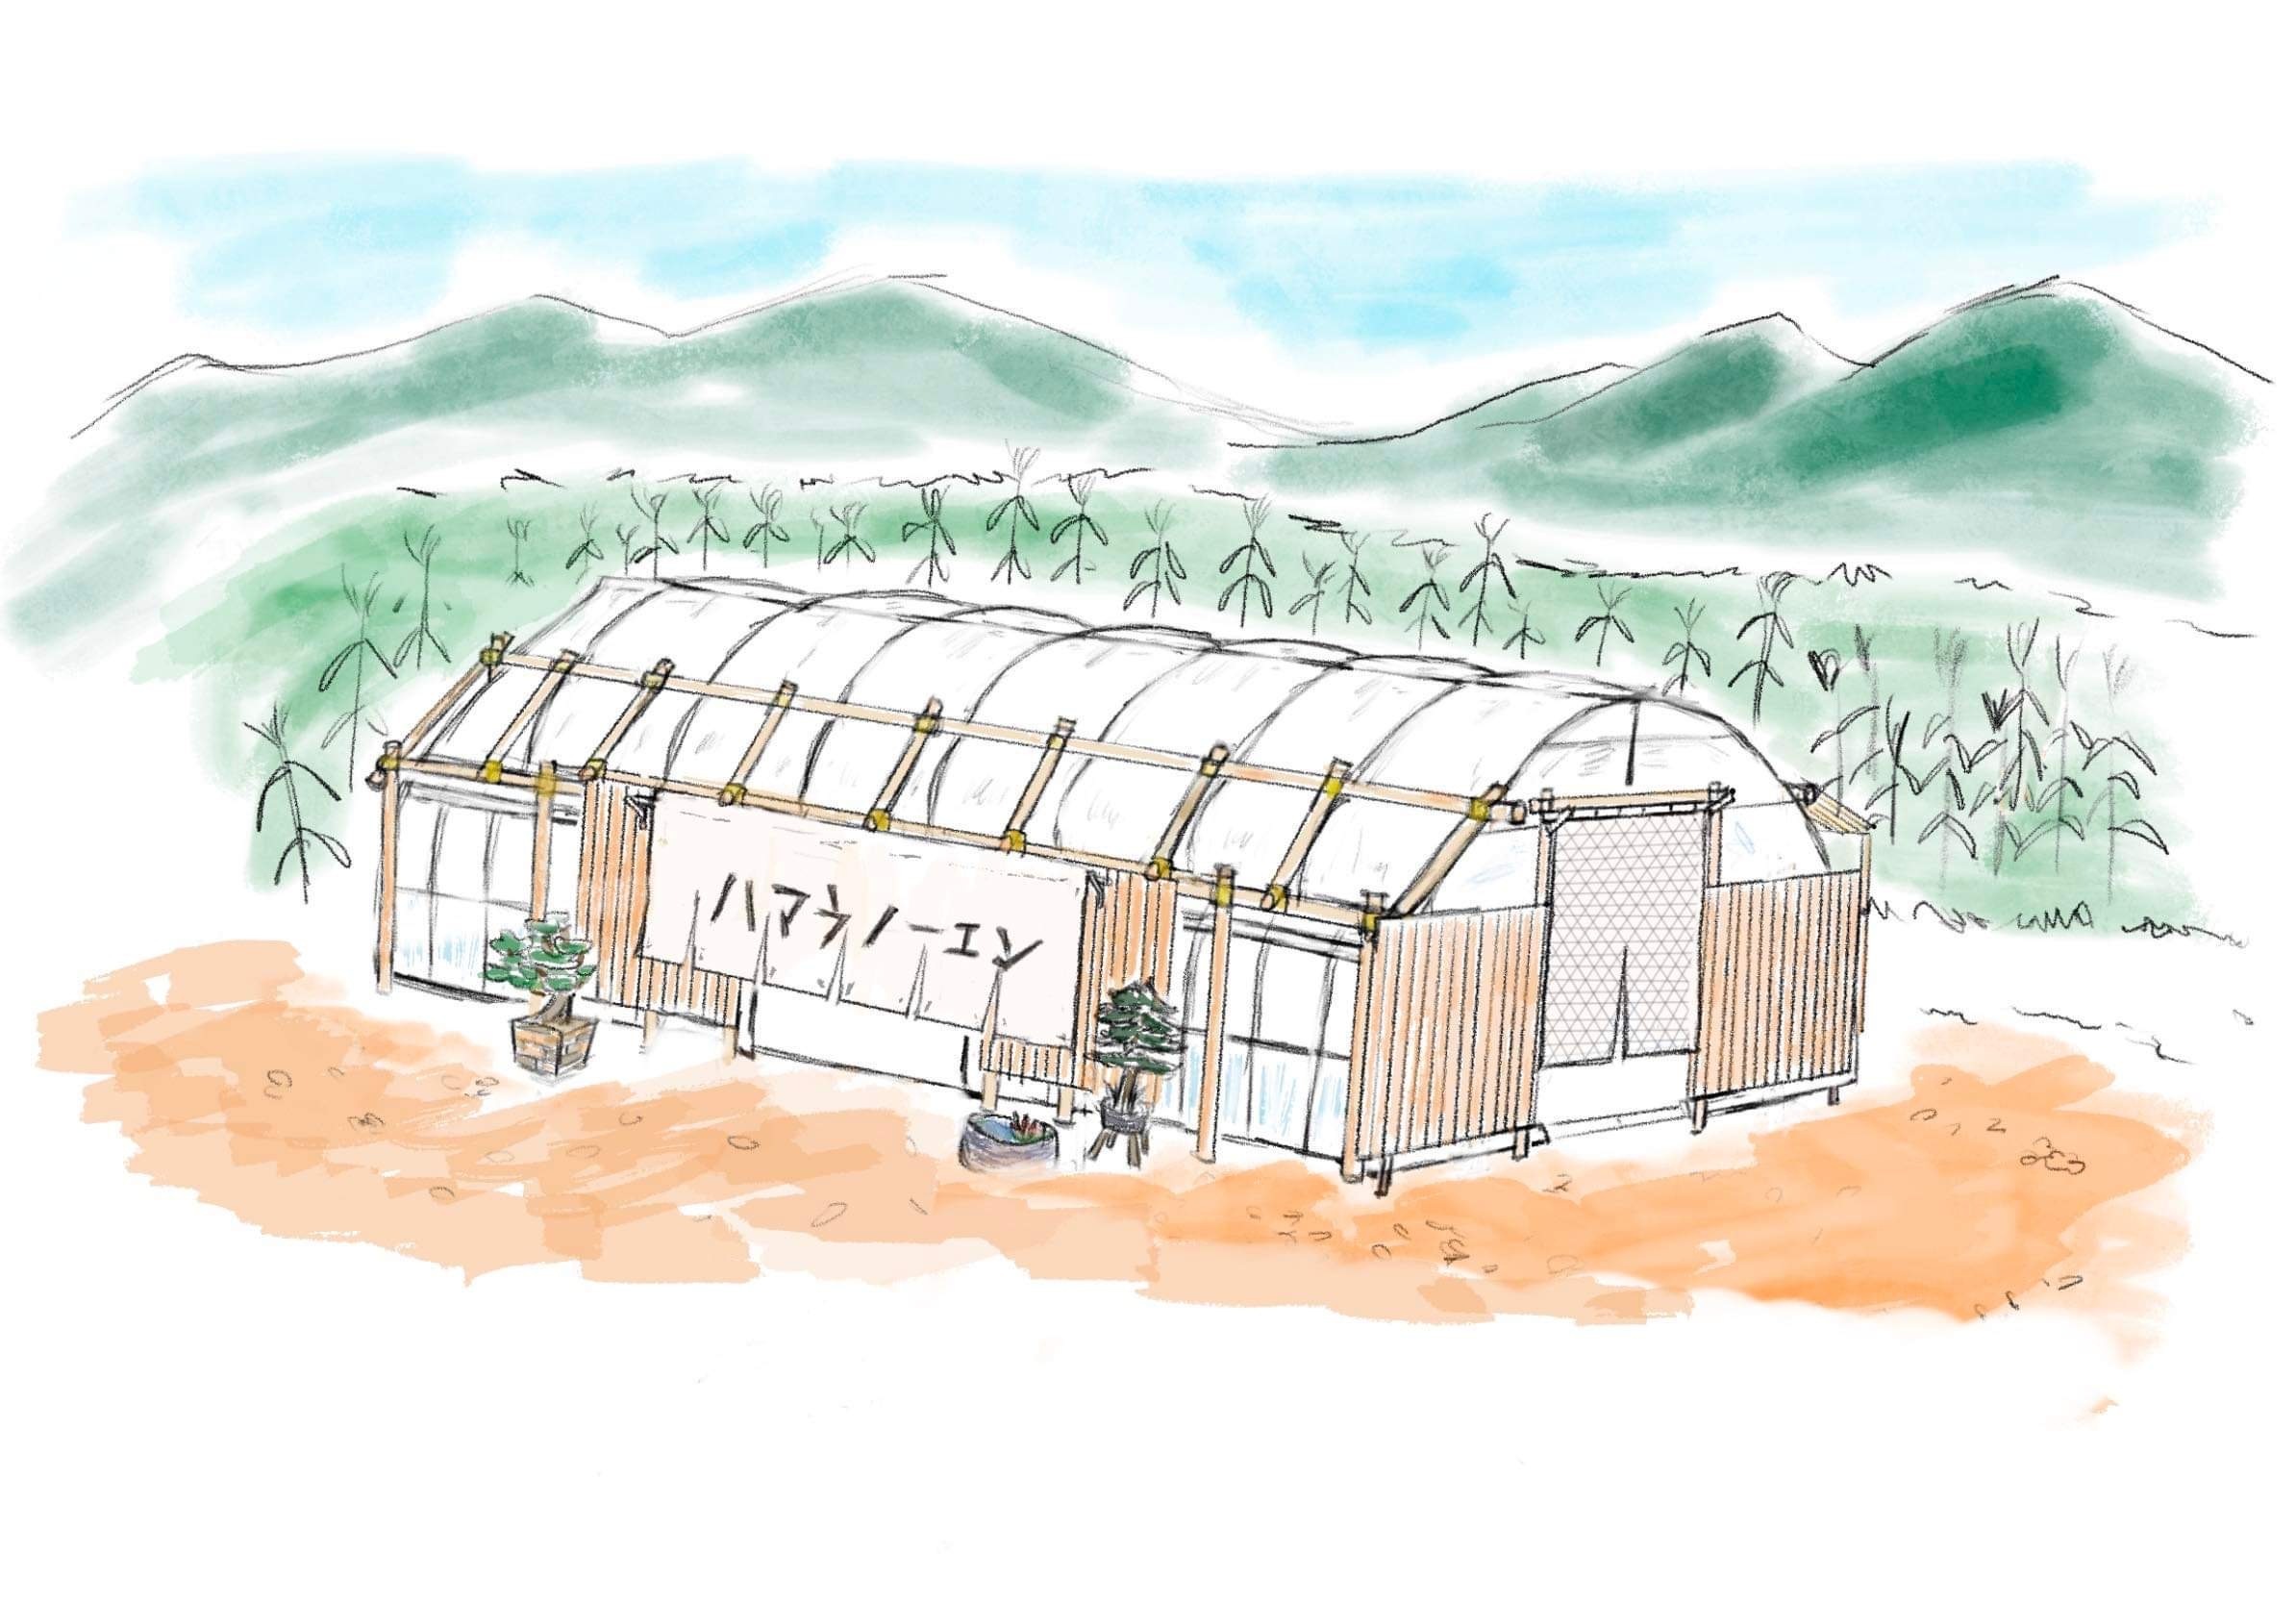 『体感型農園 ハマラハウス』 OPEN！農家が考える“新しい農園のカタチ”で持続可能な農園を実現。アイキャッチ画像